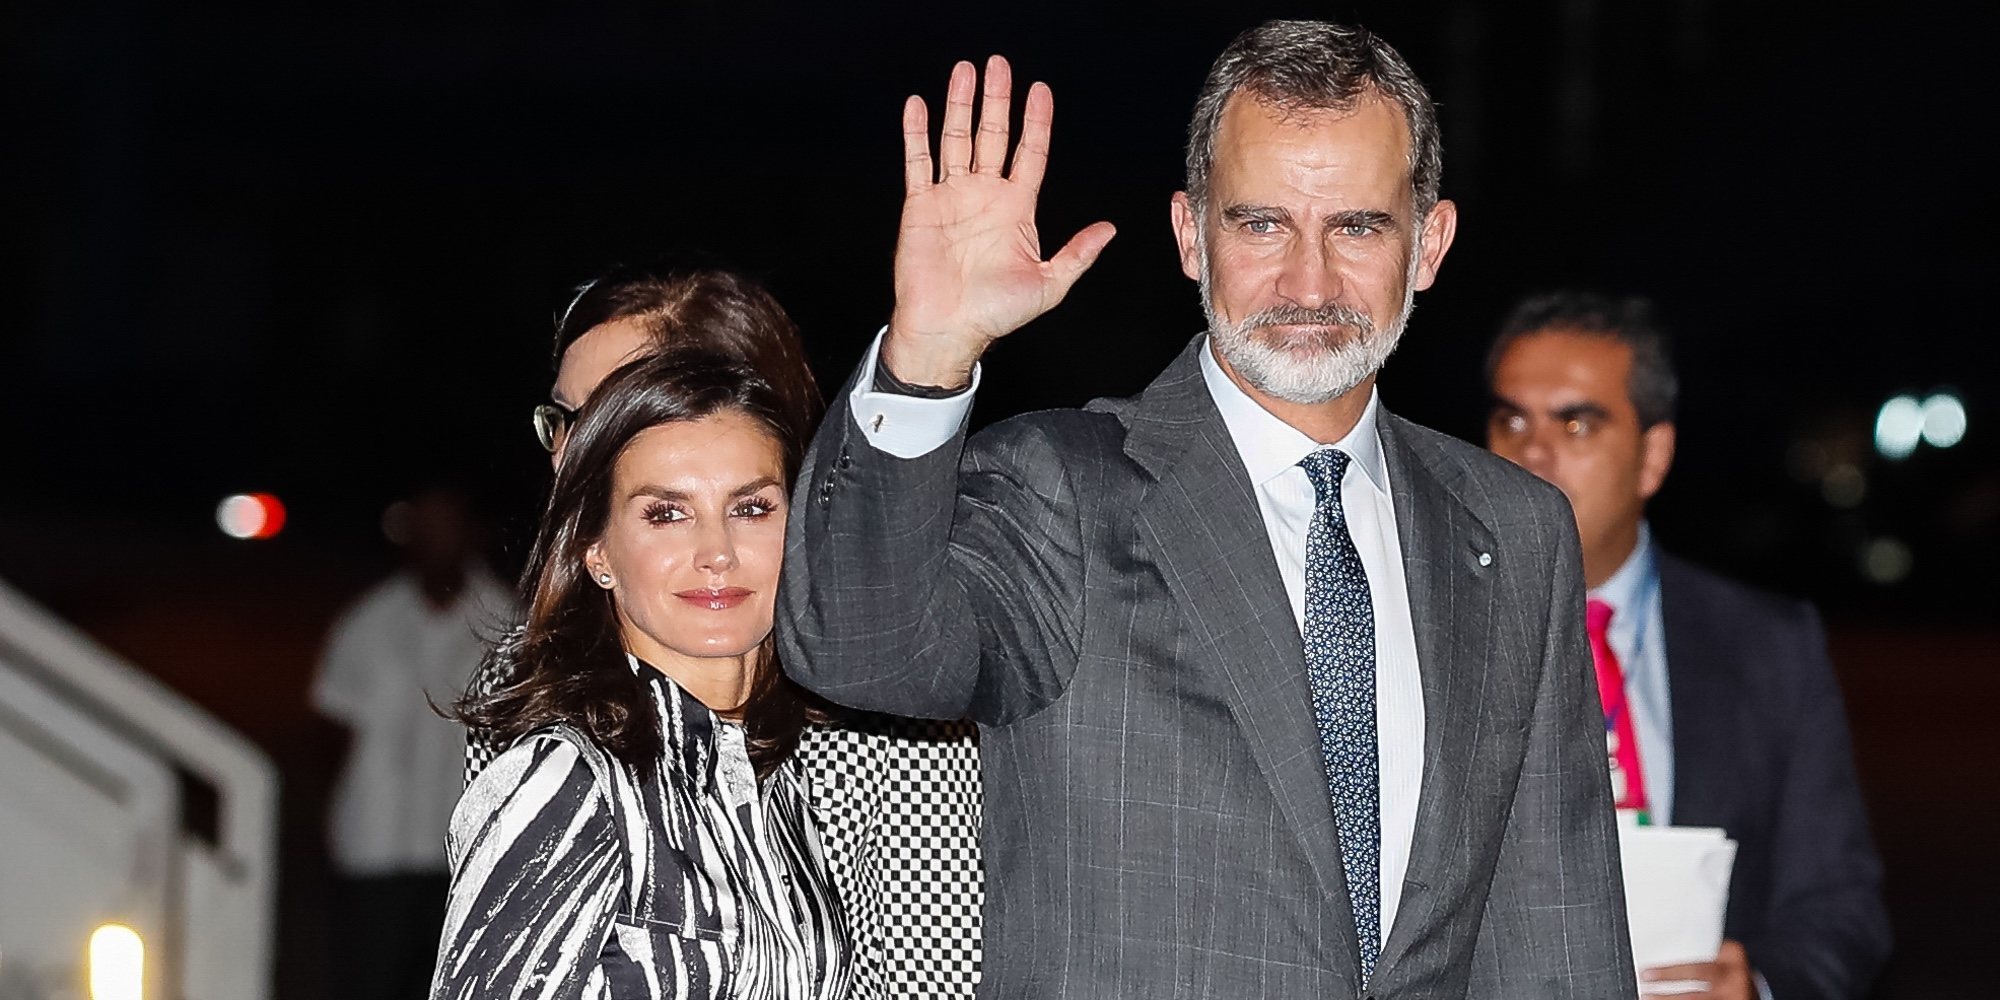 Los Reyes Felipe y Letizia, gesto cansado y mucha ilusión a su llegada a La Habana para su Visita de Estado a Cuba